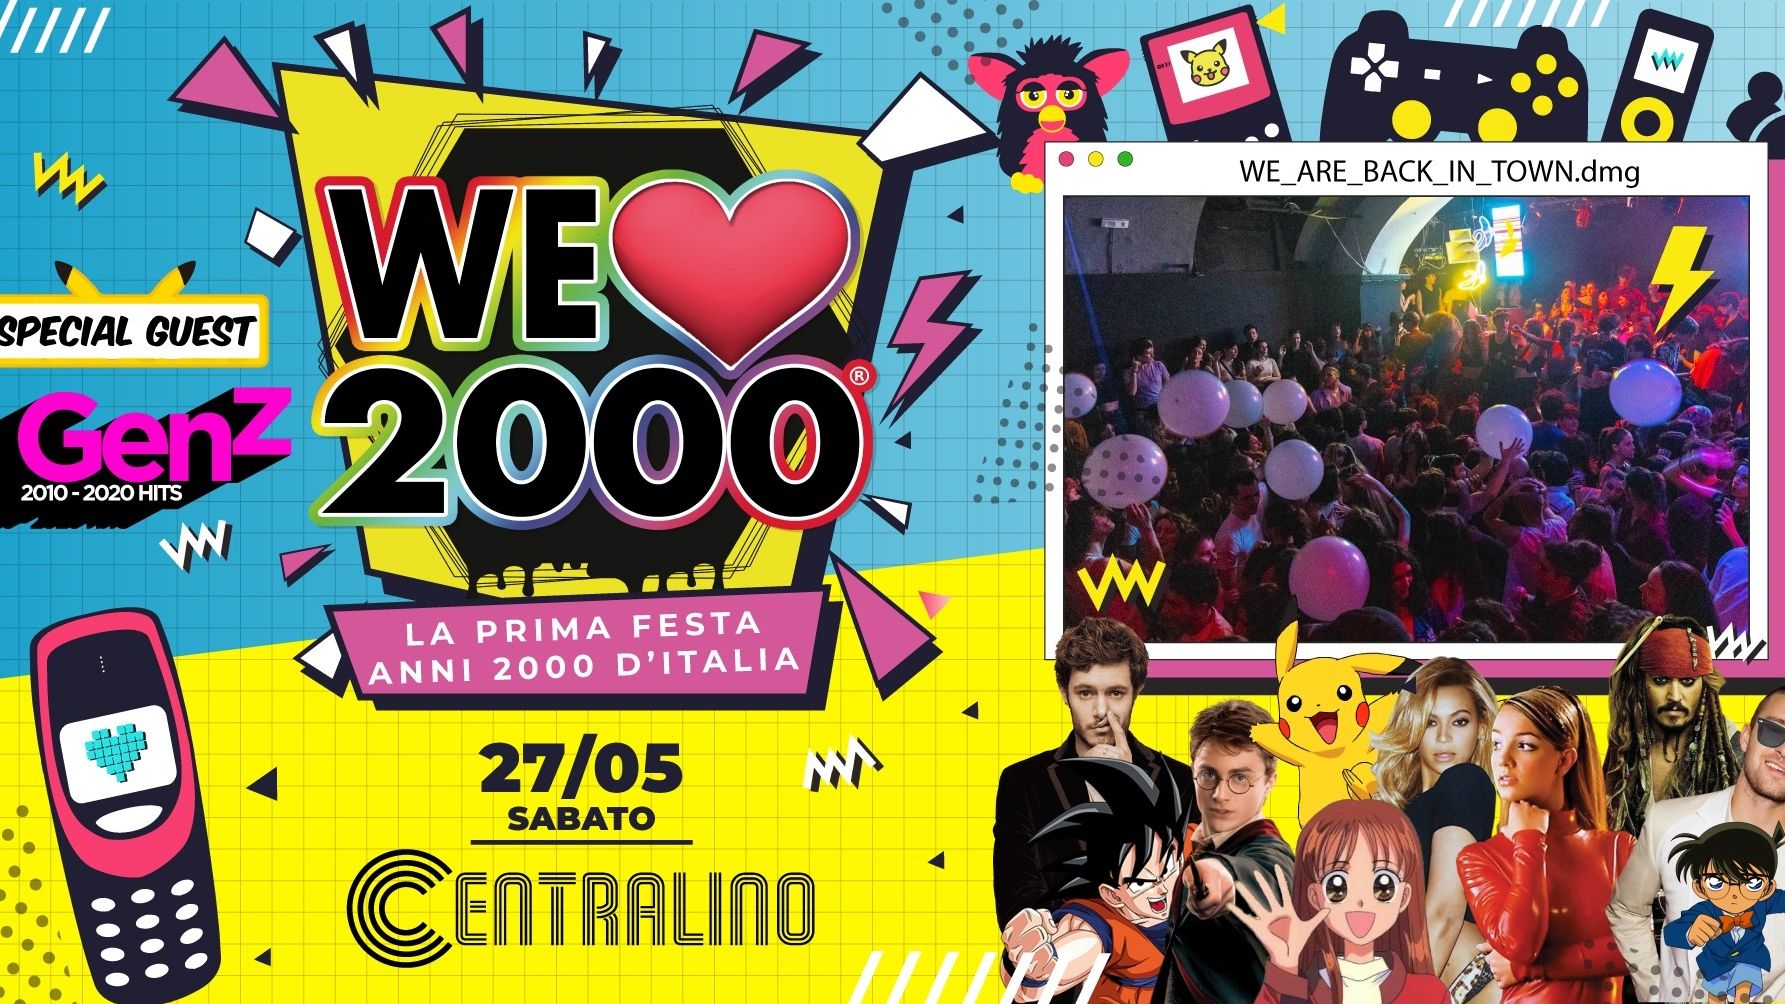 We Love 2000 vs Generazione Z - Anni 2000 vs Anni 2010